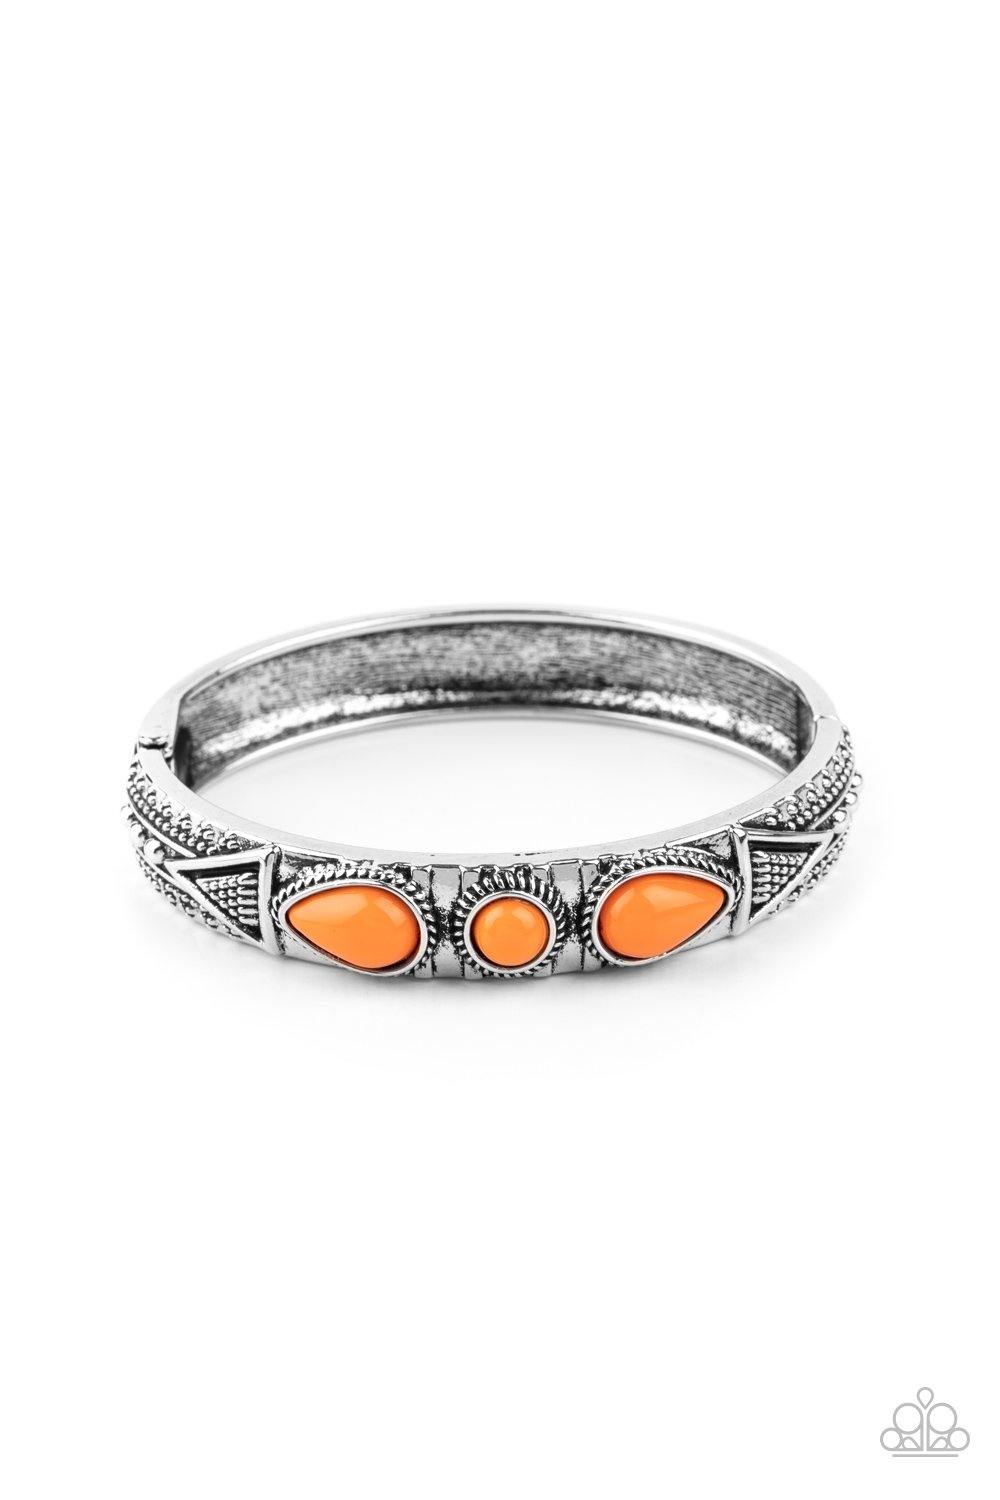 Radiant Ruins - Orange Paparazzi Bracelet - sofancyjewels